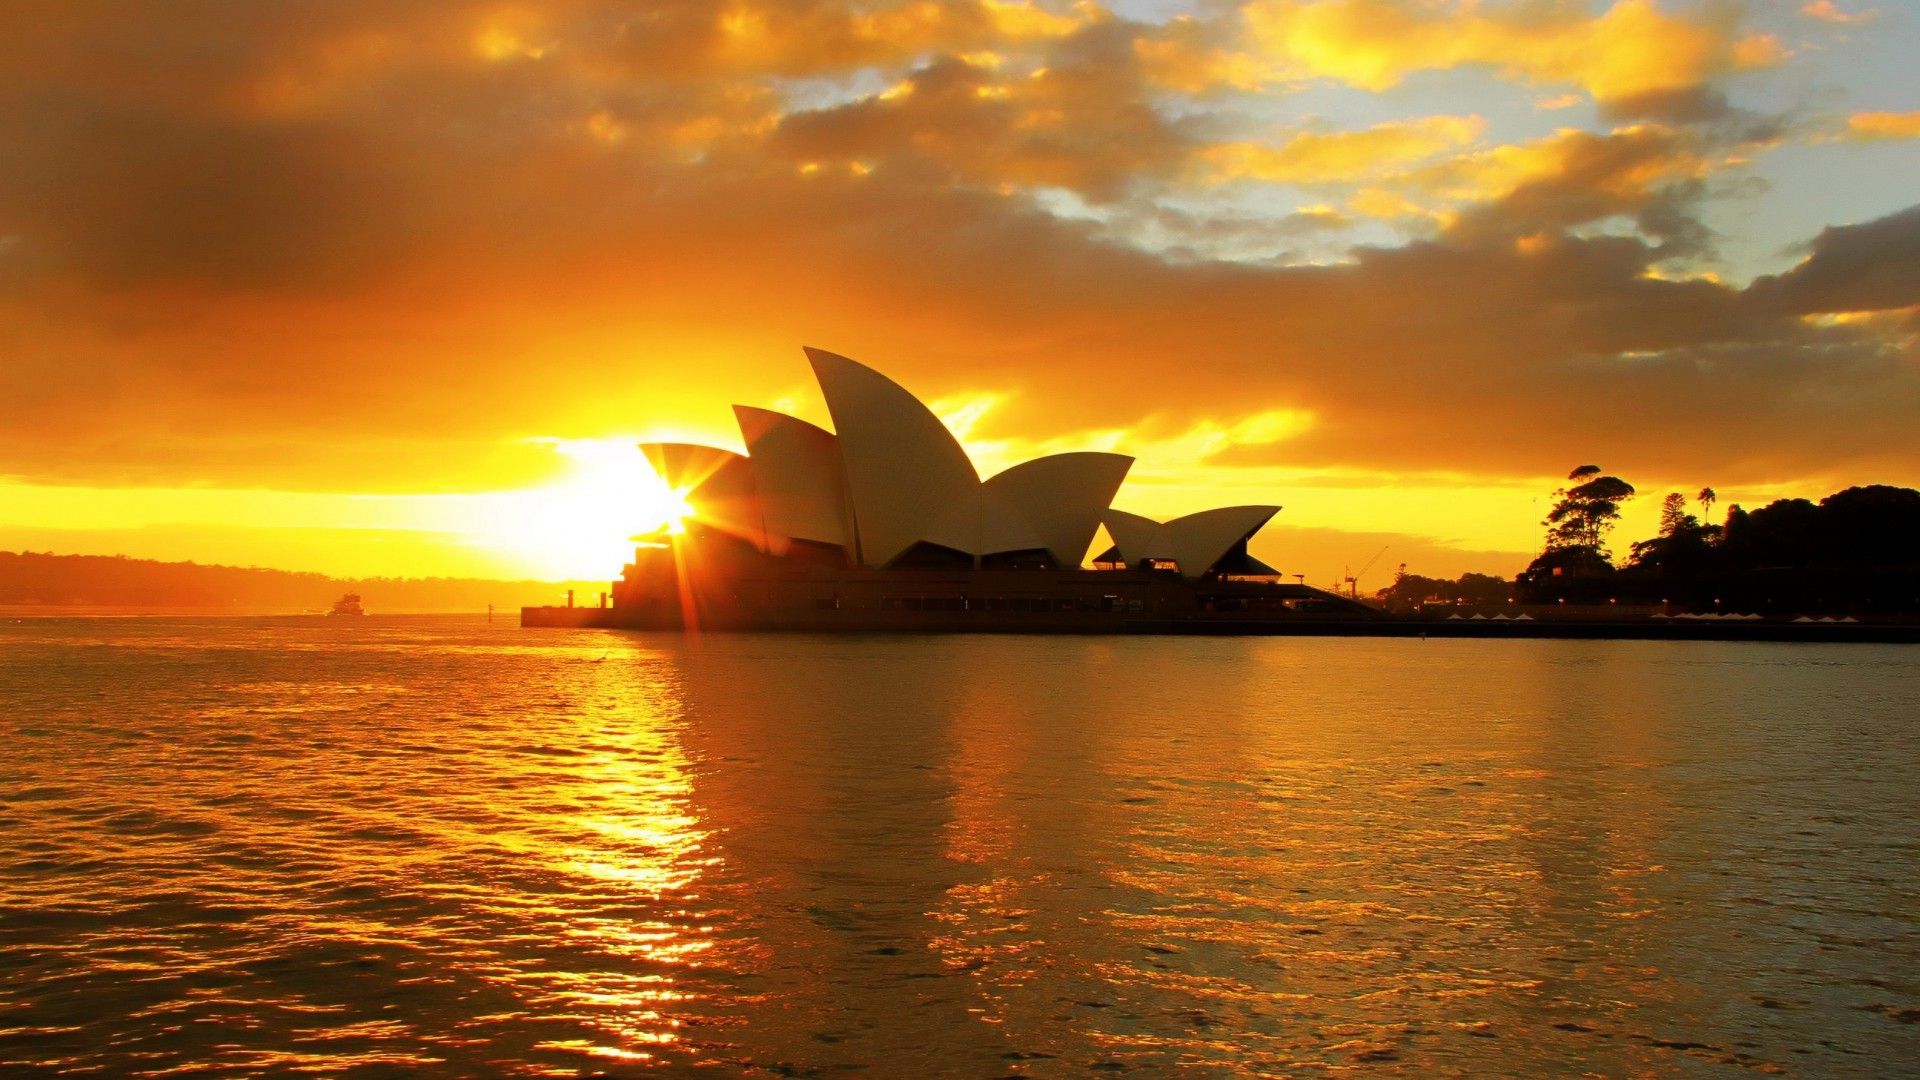 A Beautiful Sunset at Sydney Opera House [1920 X 1080]